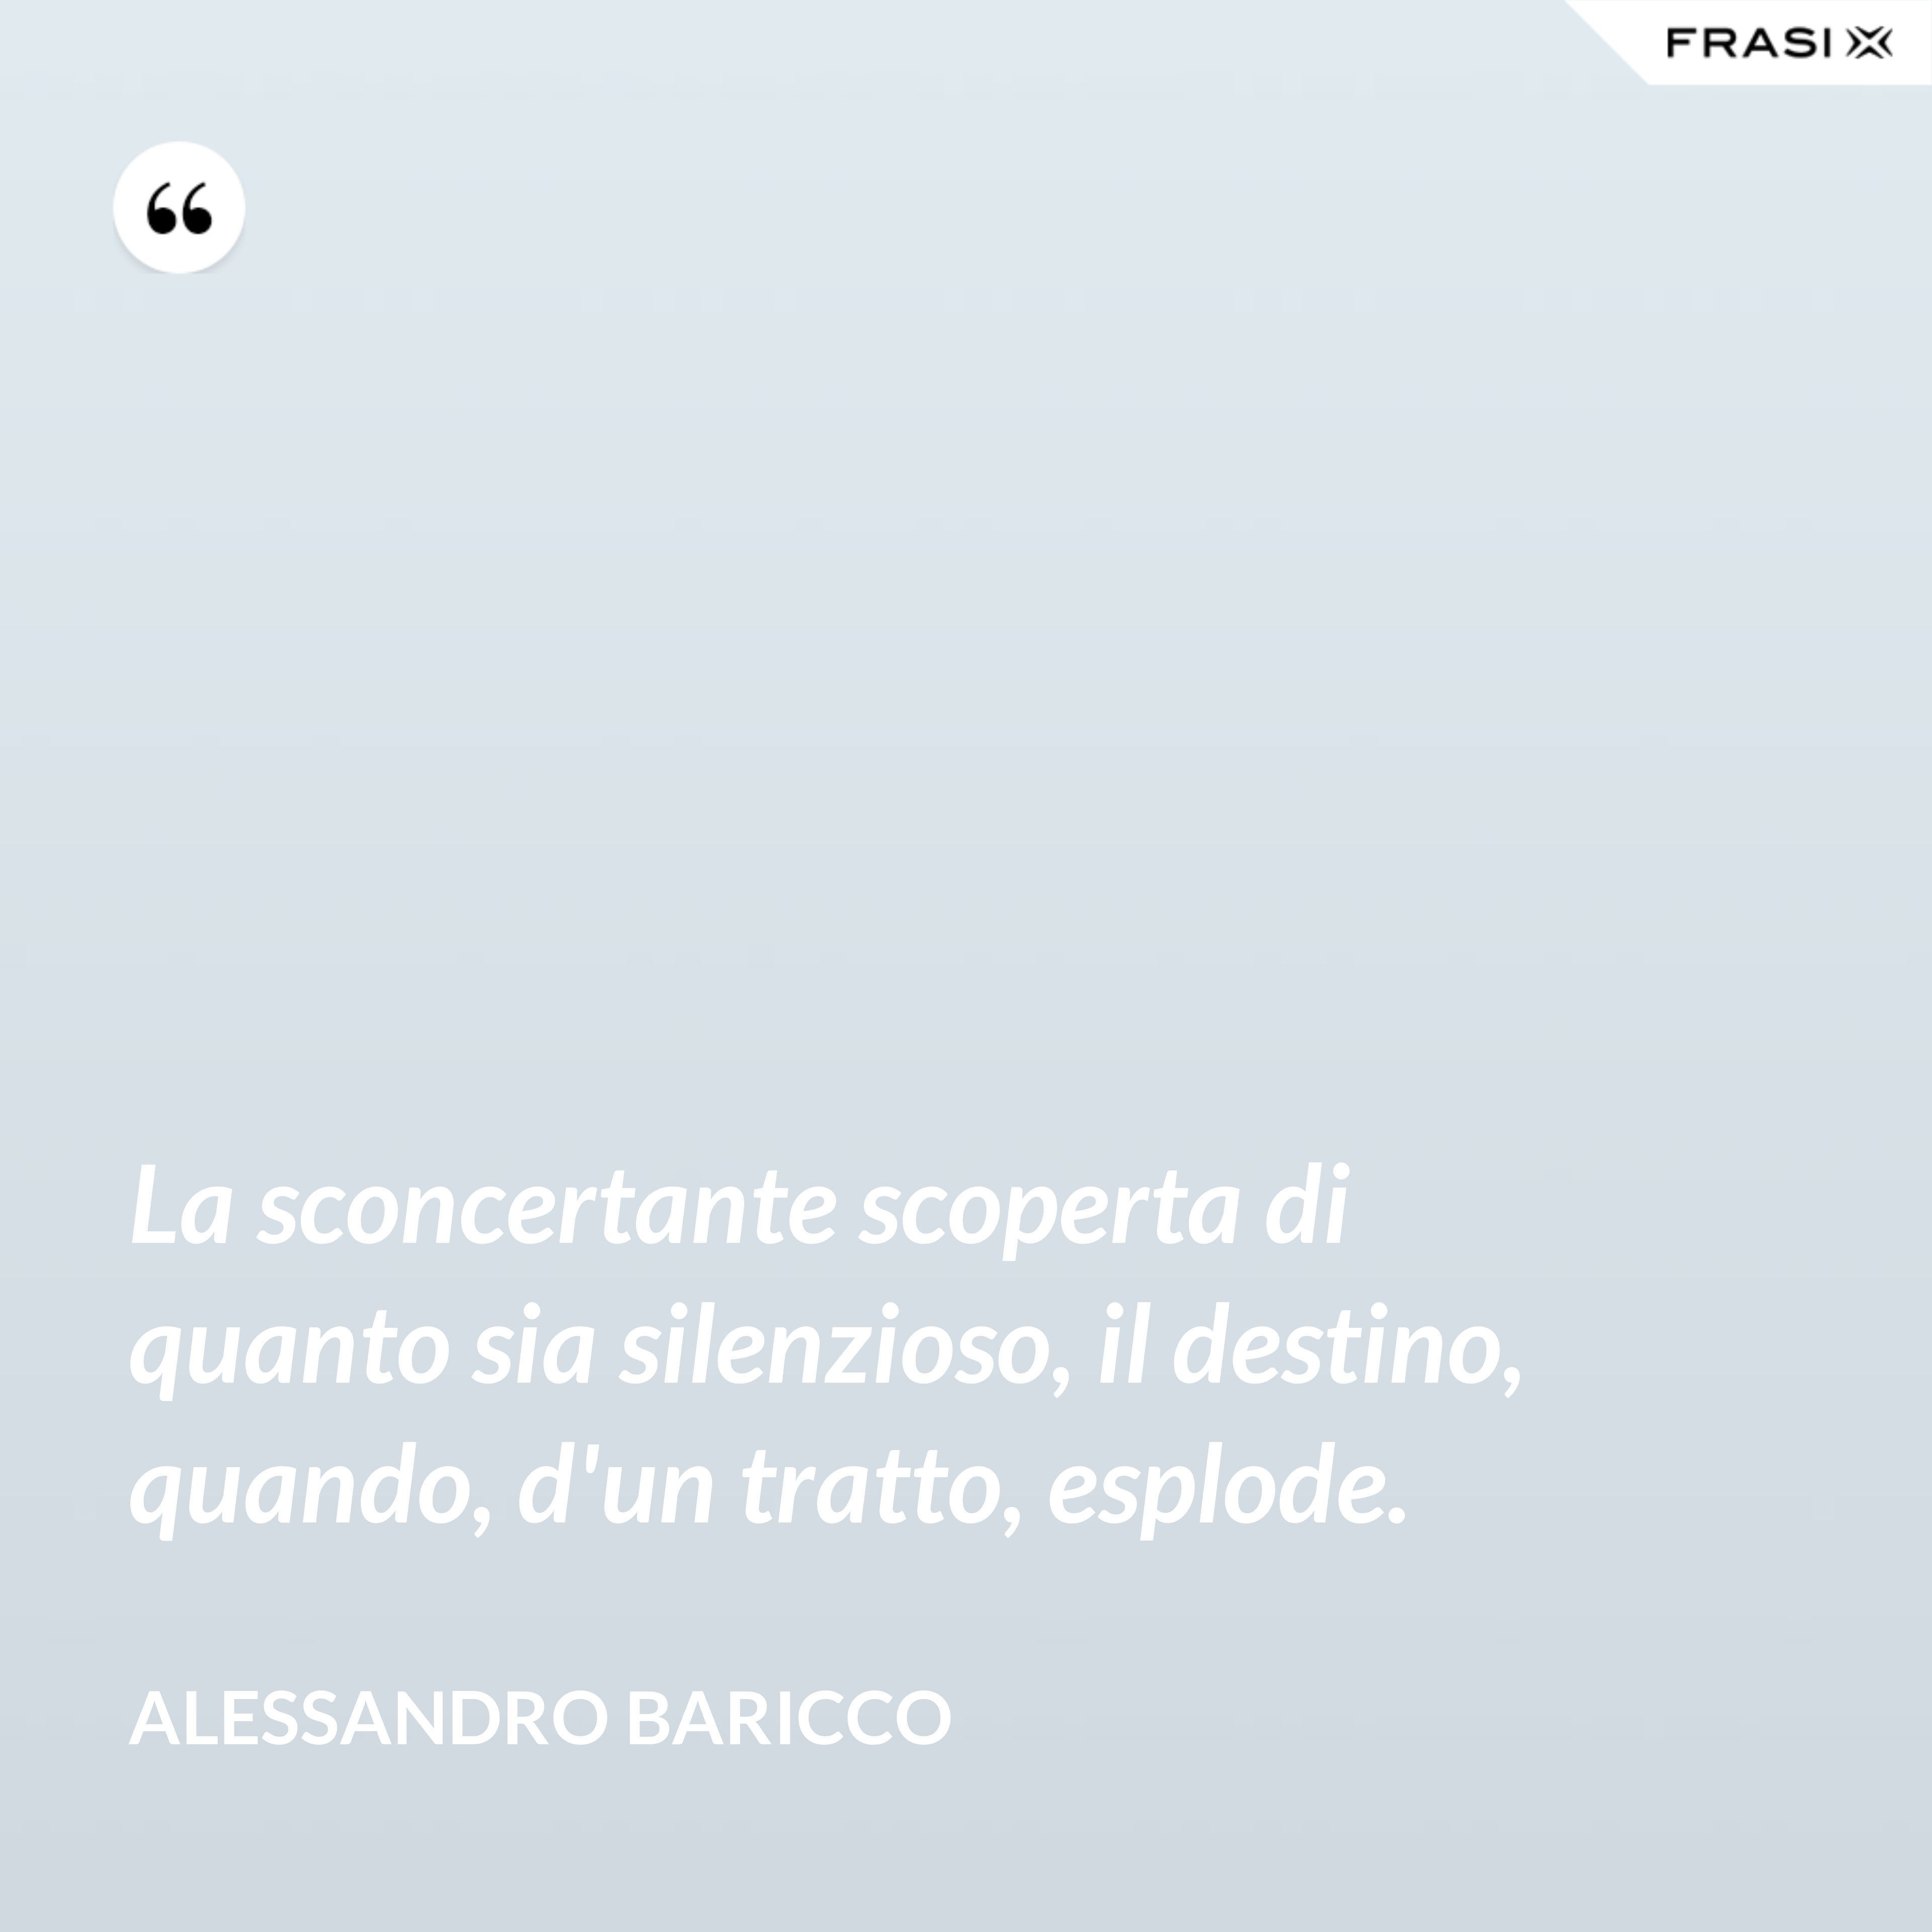 La sconcertante scoperta di quanto sia silenzioso, il destino, quando, d'un tratto, esplode. - Alessandro Baricco